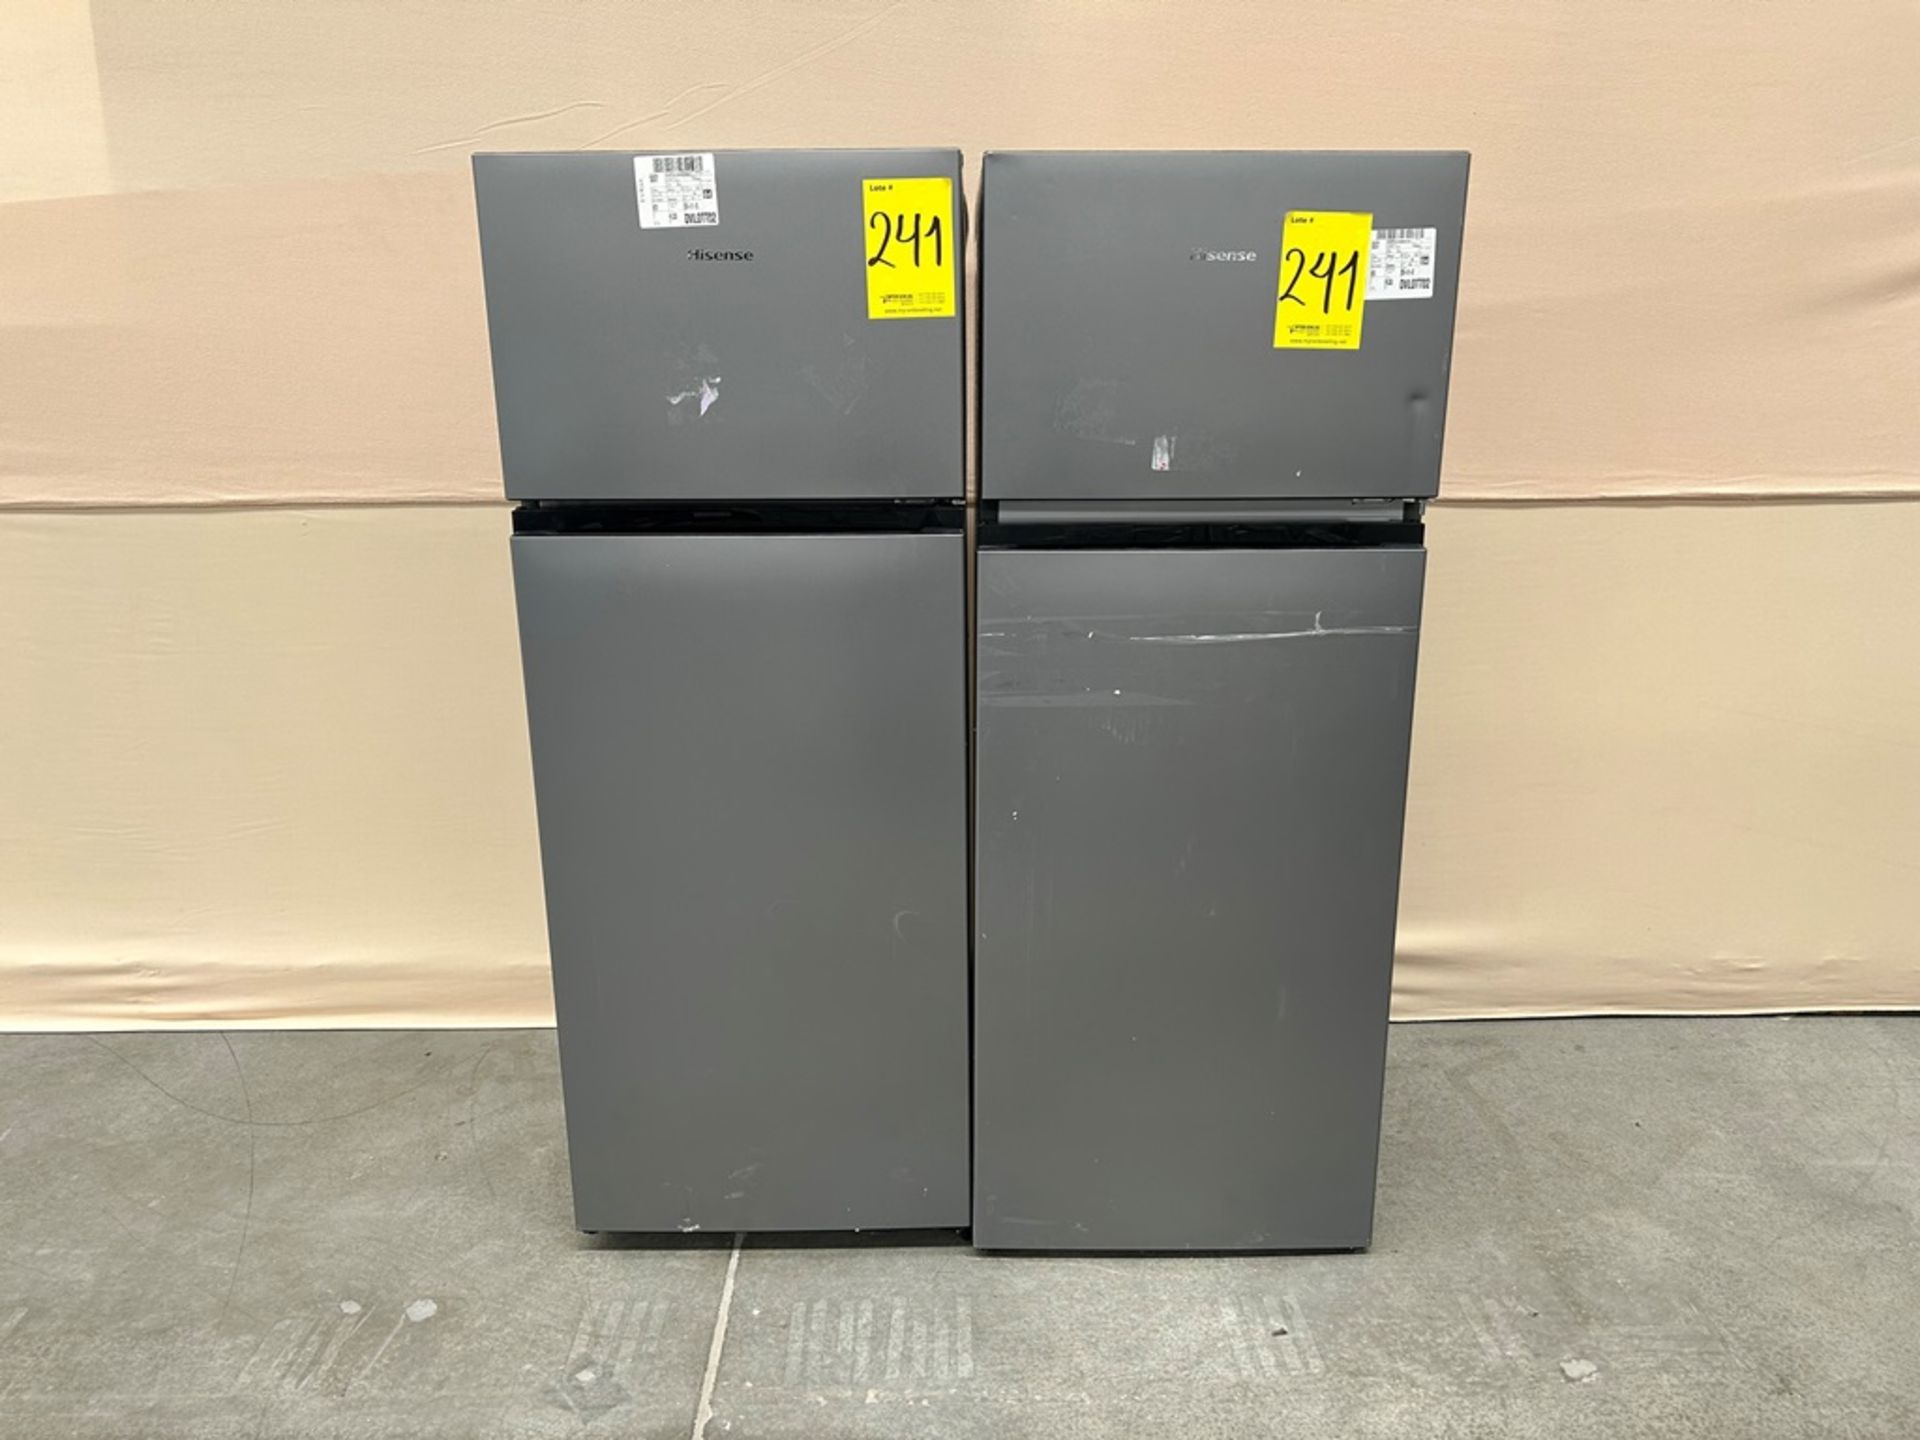 Lote de 2 refrigeradores contiene: Refrigerador Marca HISENSE, Modelo RT80D6AGX, Serie 20422, Color